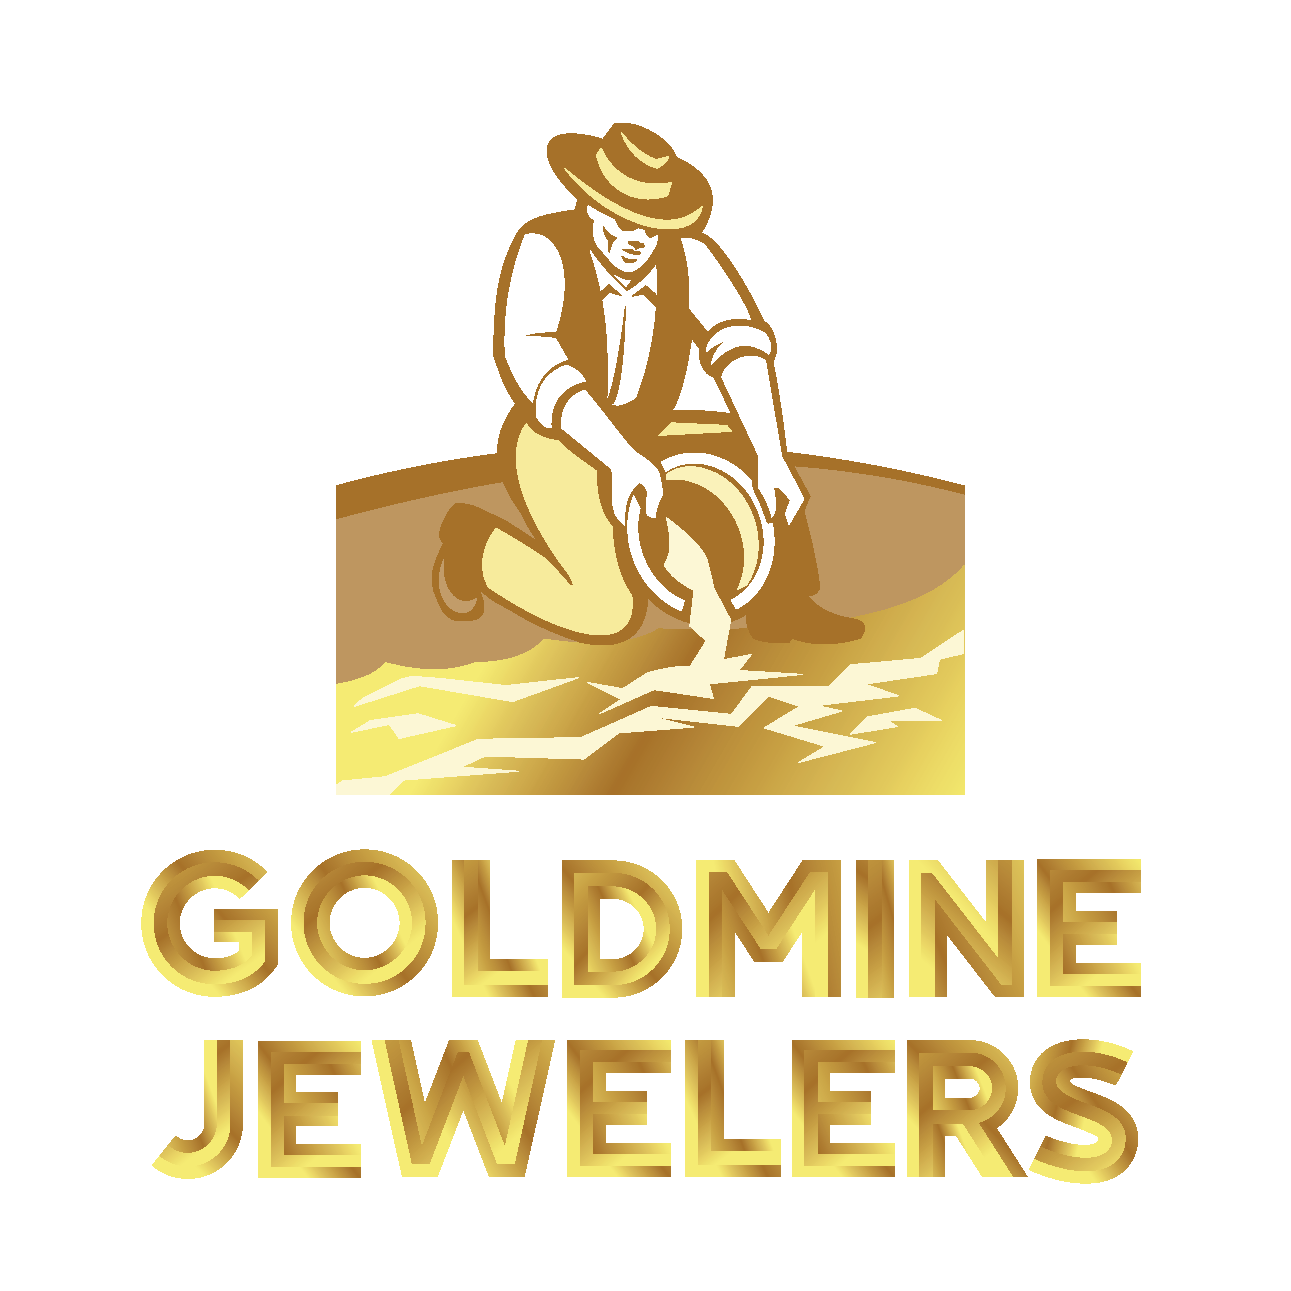 Goldmine Jewelers Logo_02